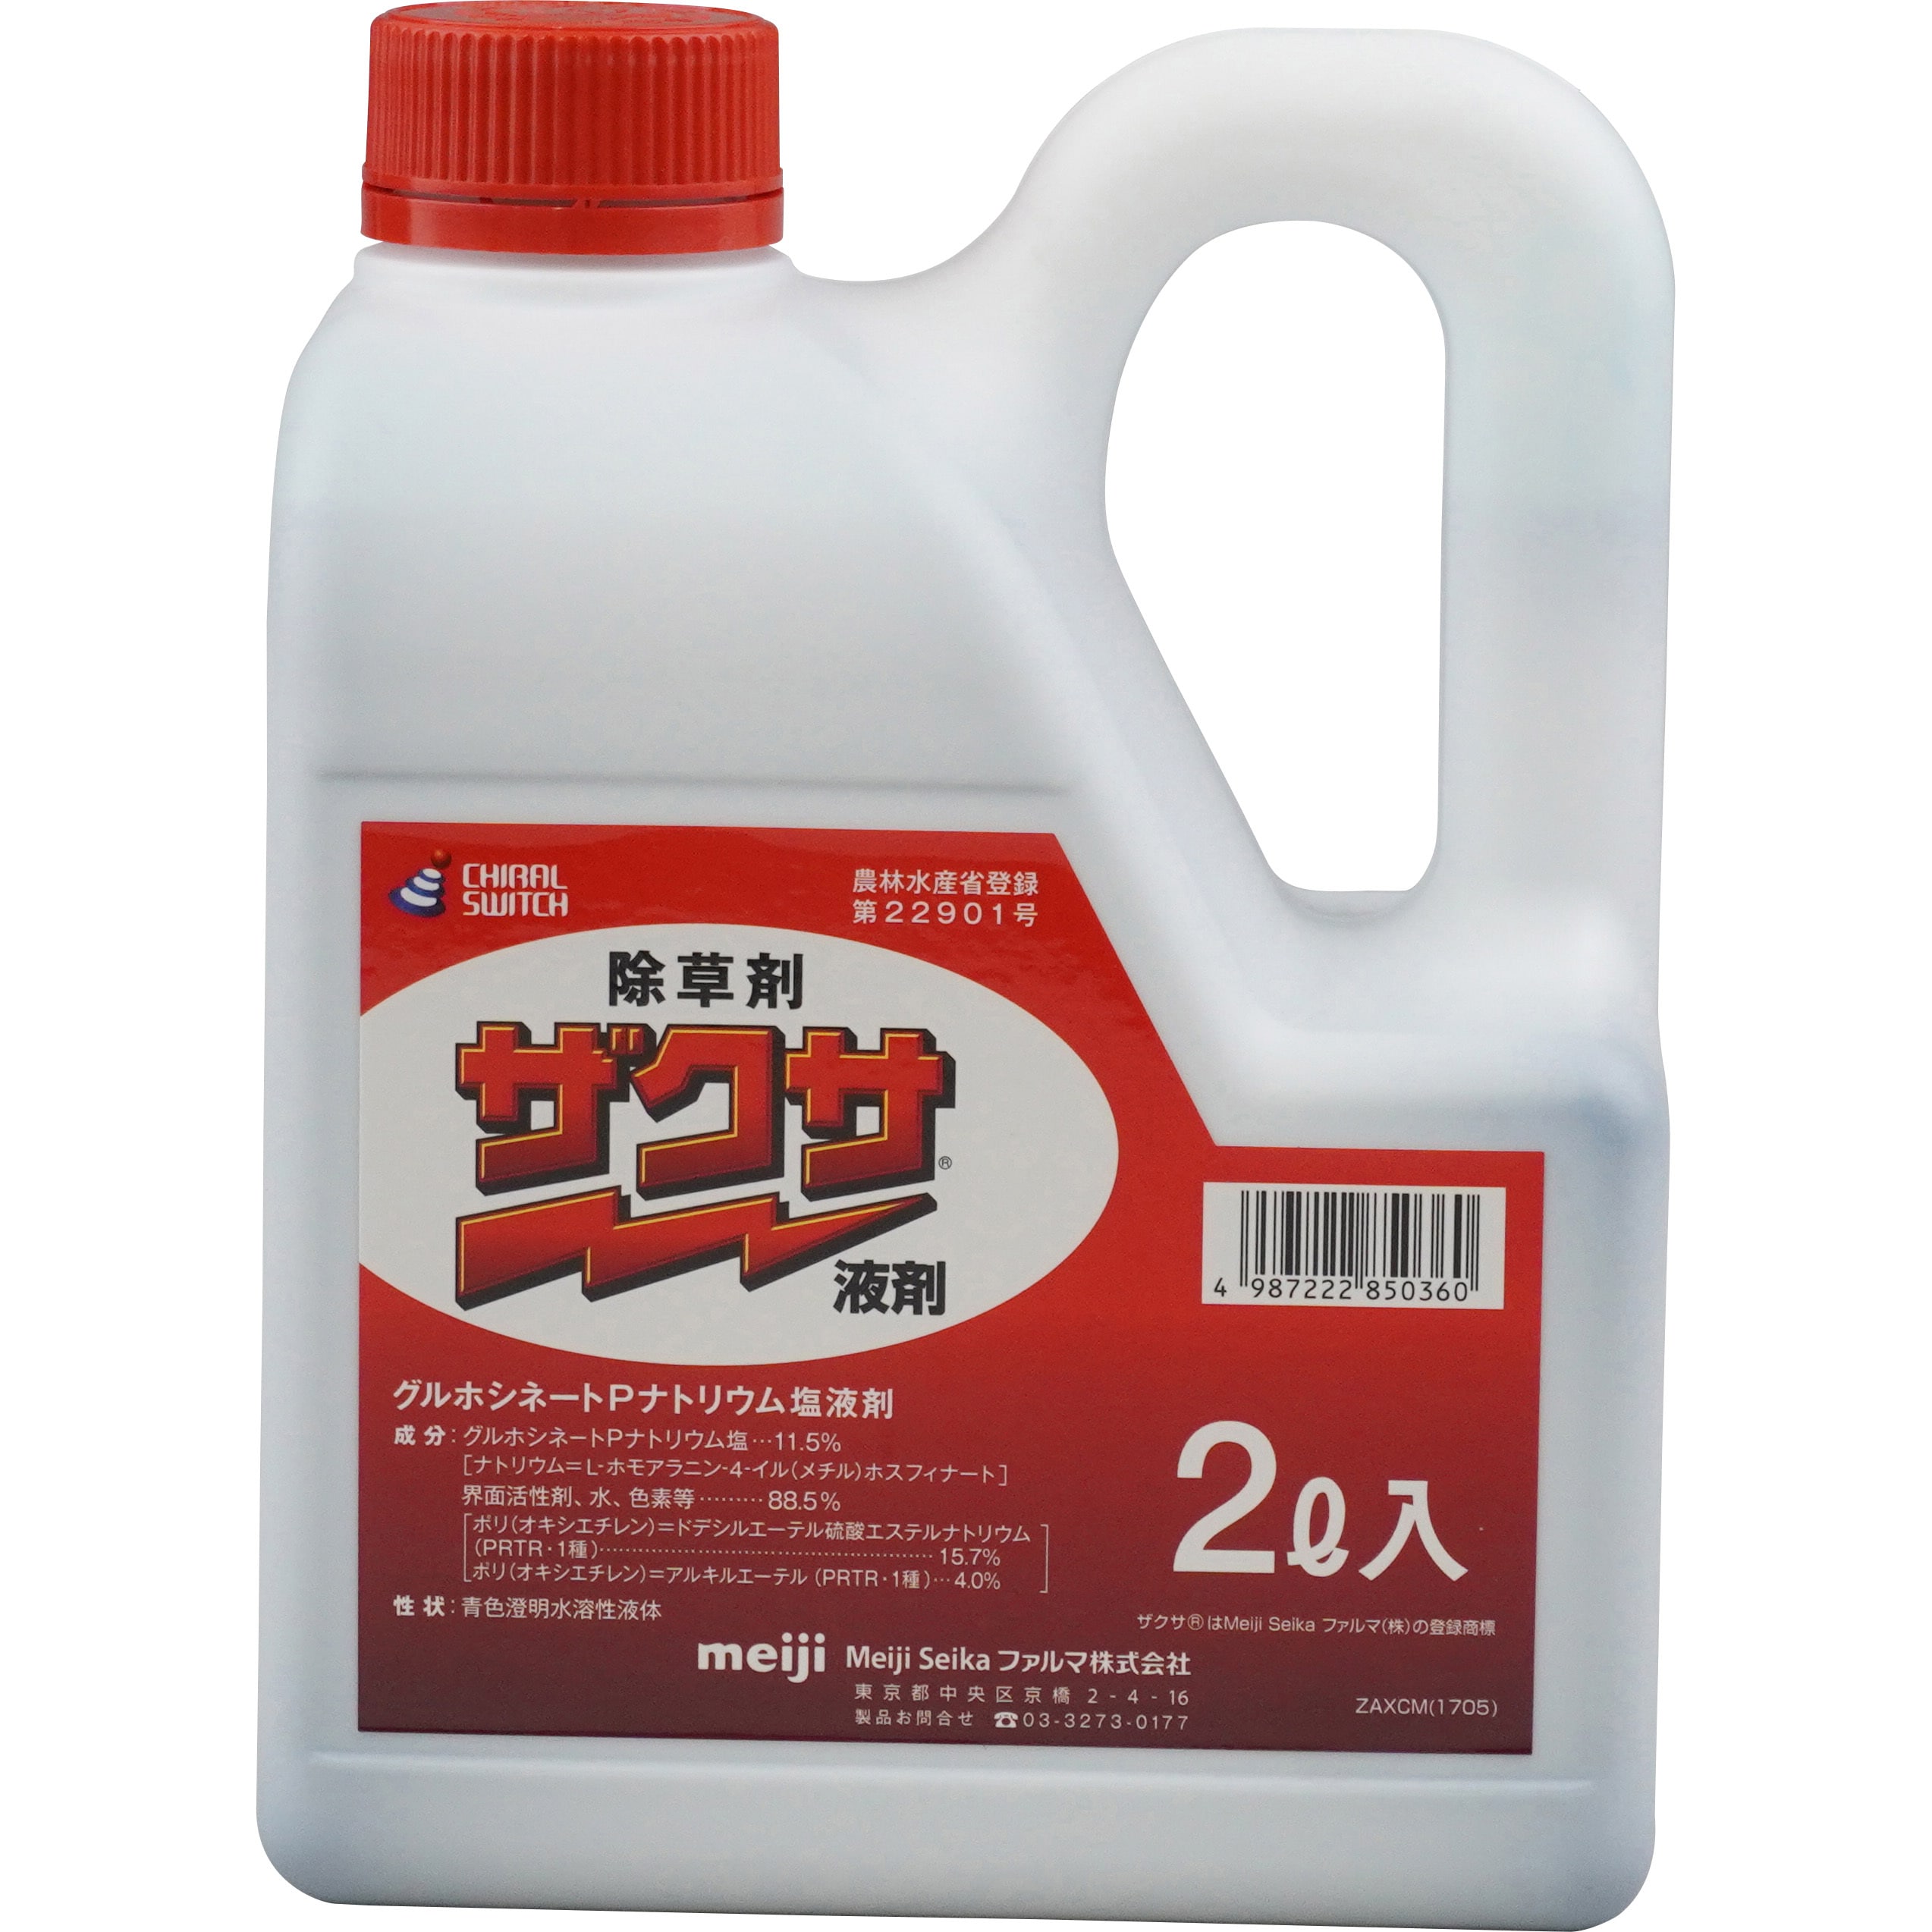 ザクサ液剤 1本(2L) 三井化学クロップ&ライフソリューション株式会社